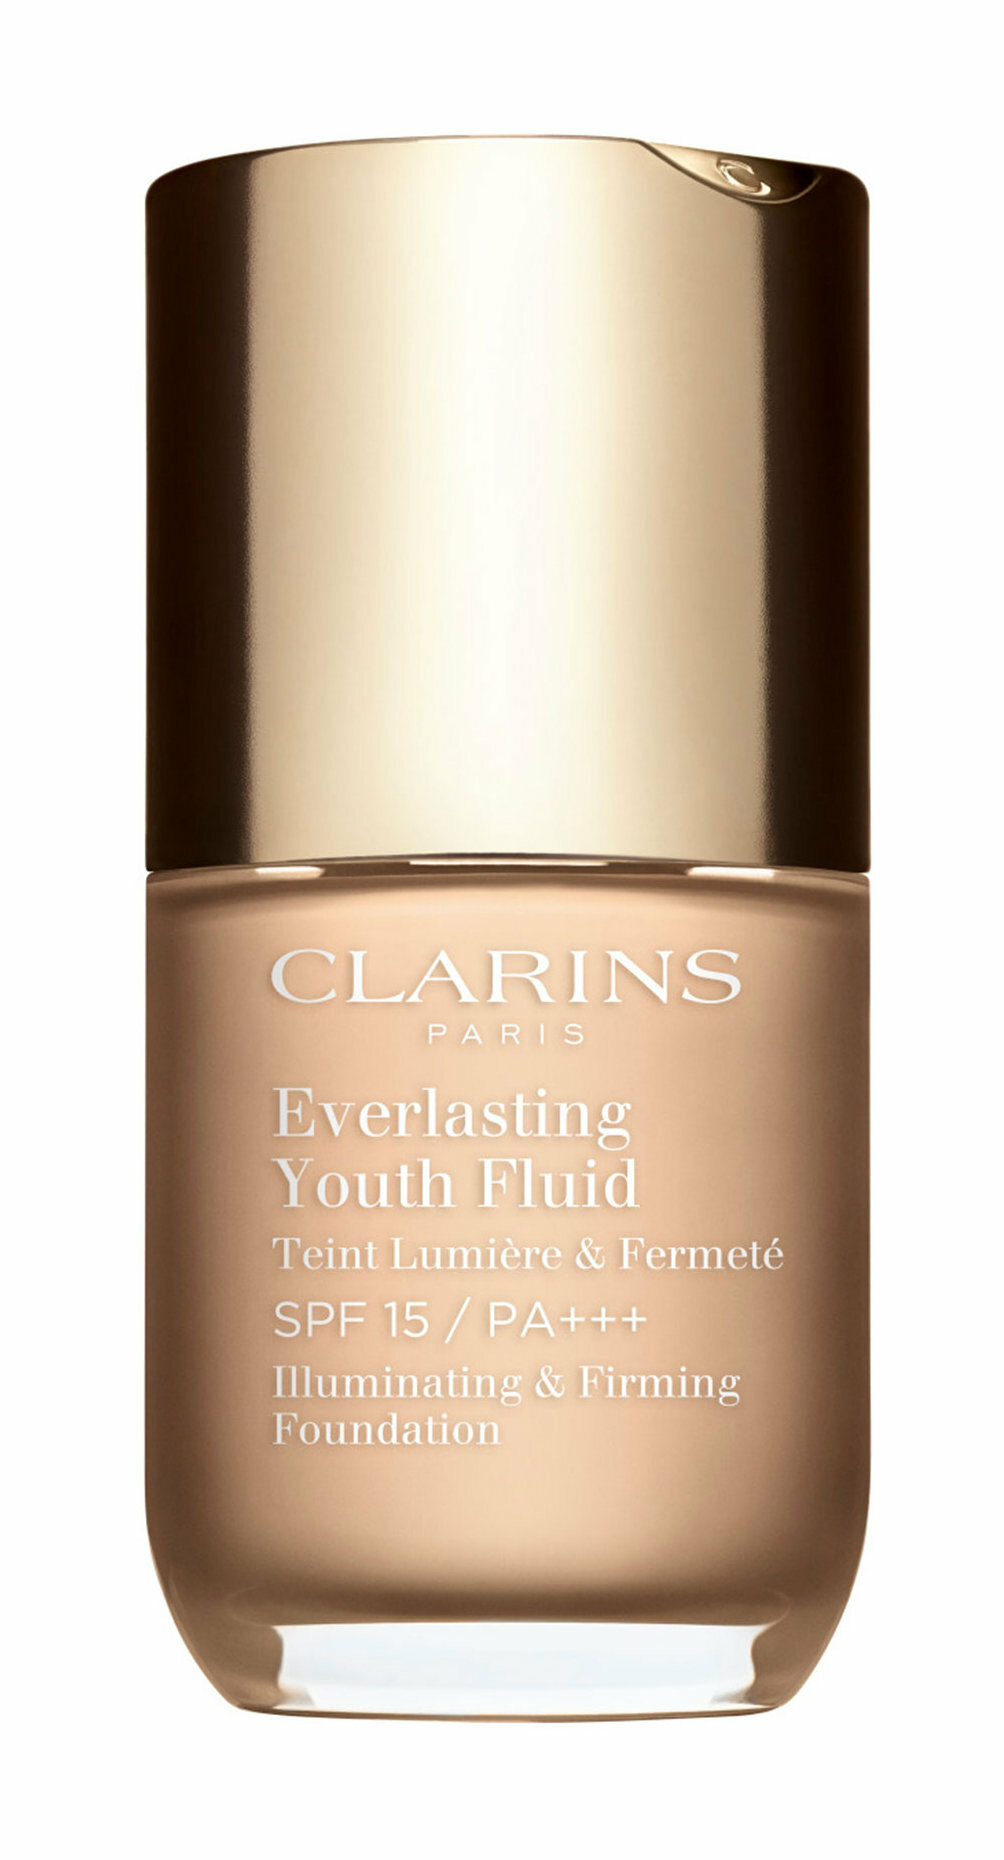 Тональный флюид для лица с омолаживающим действием Clarins Everlasting Youth Fluid SPF 15 PA+++ 30 мл .